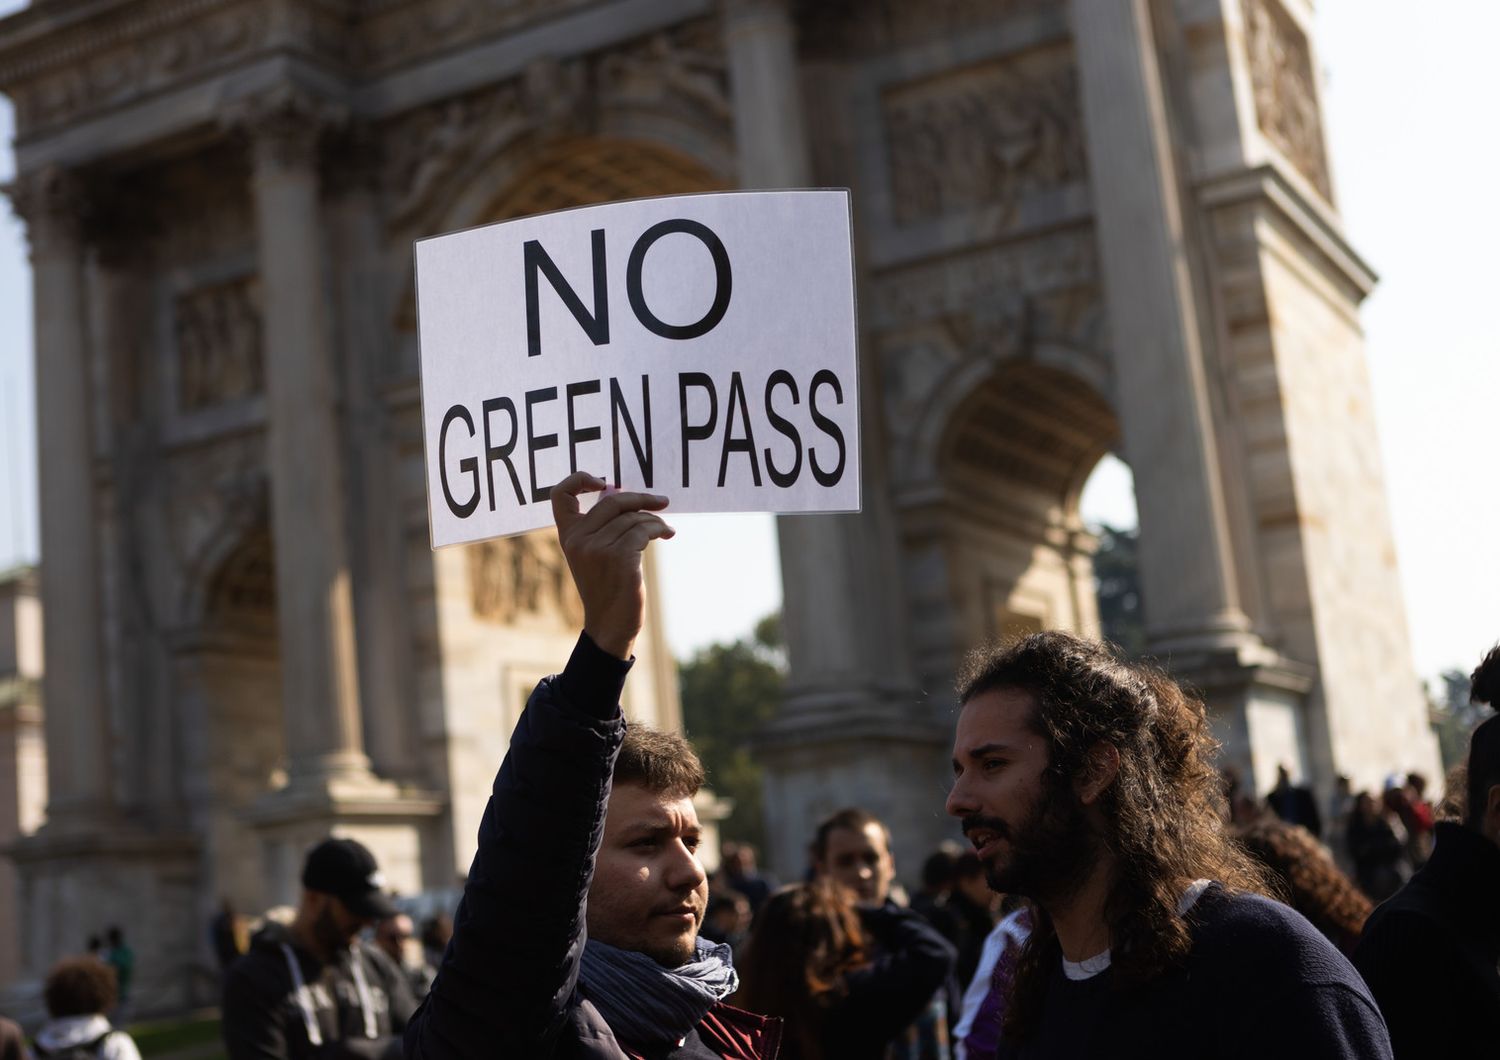 La manifestazione dei no-green pass a Milano